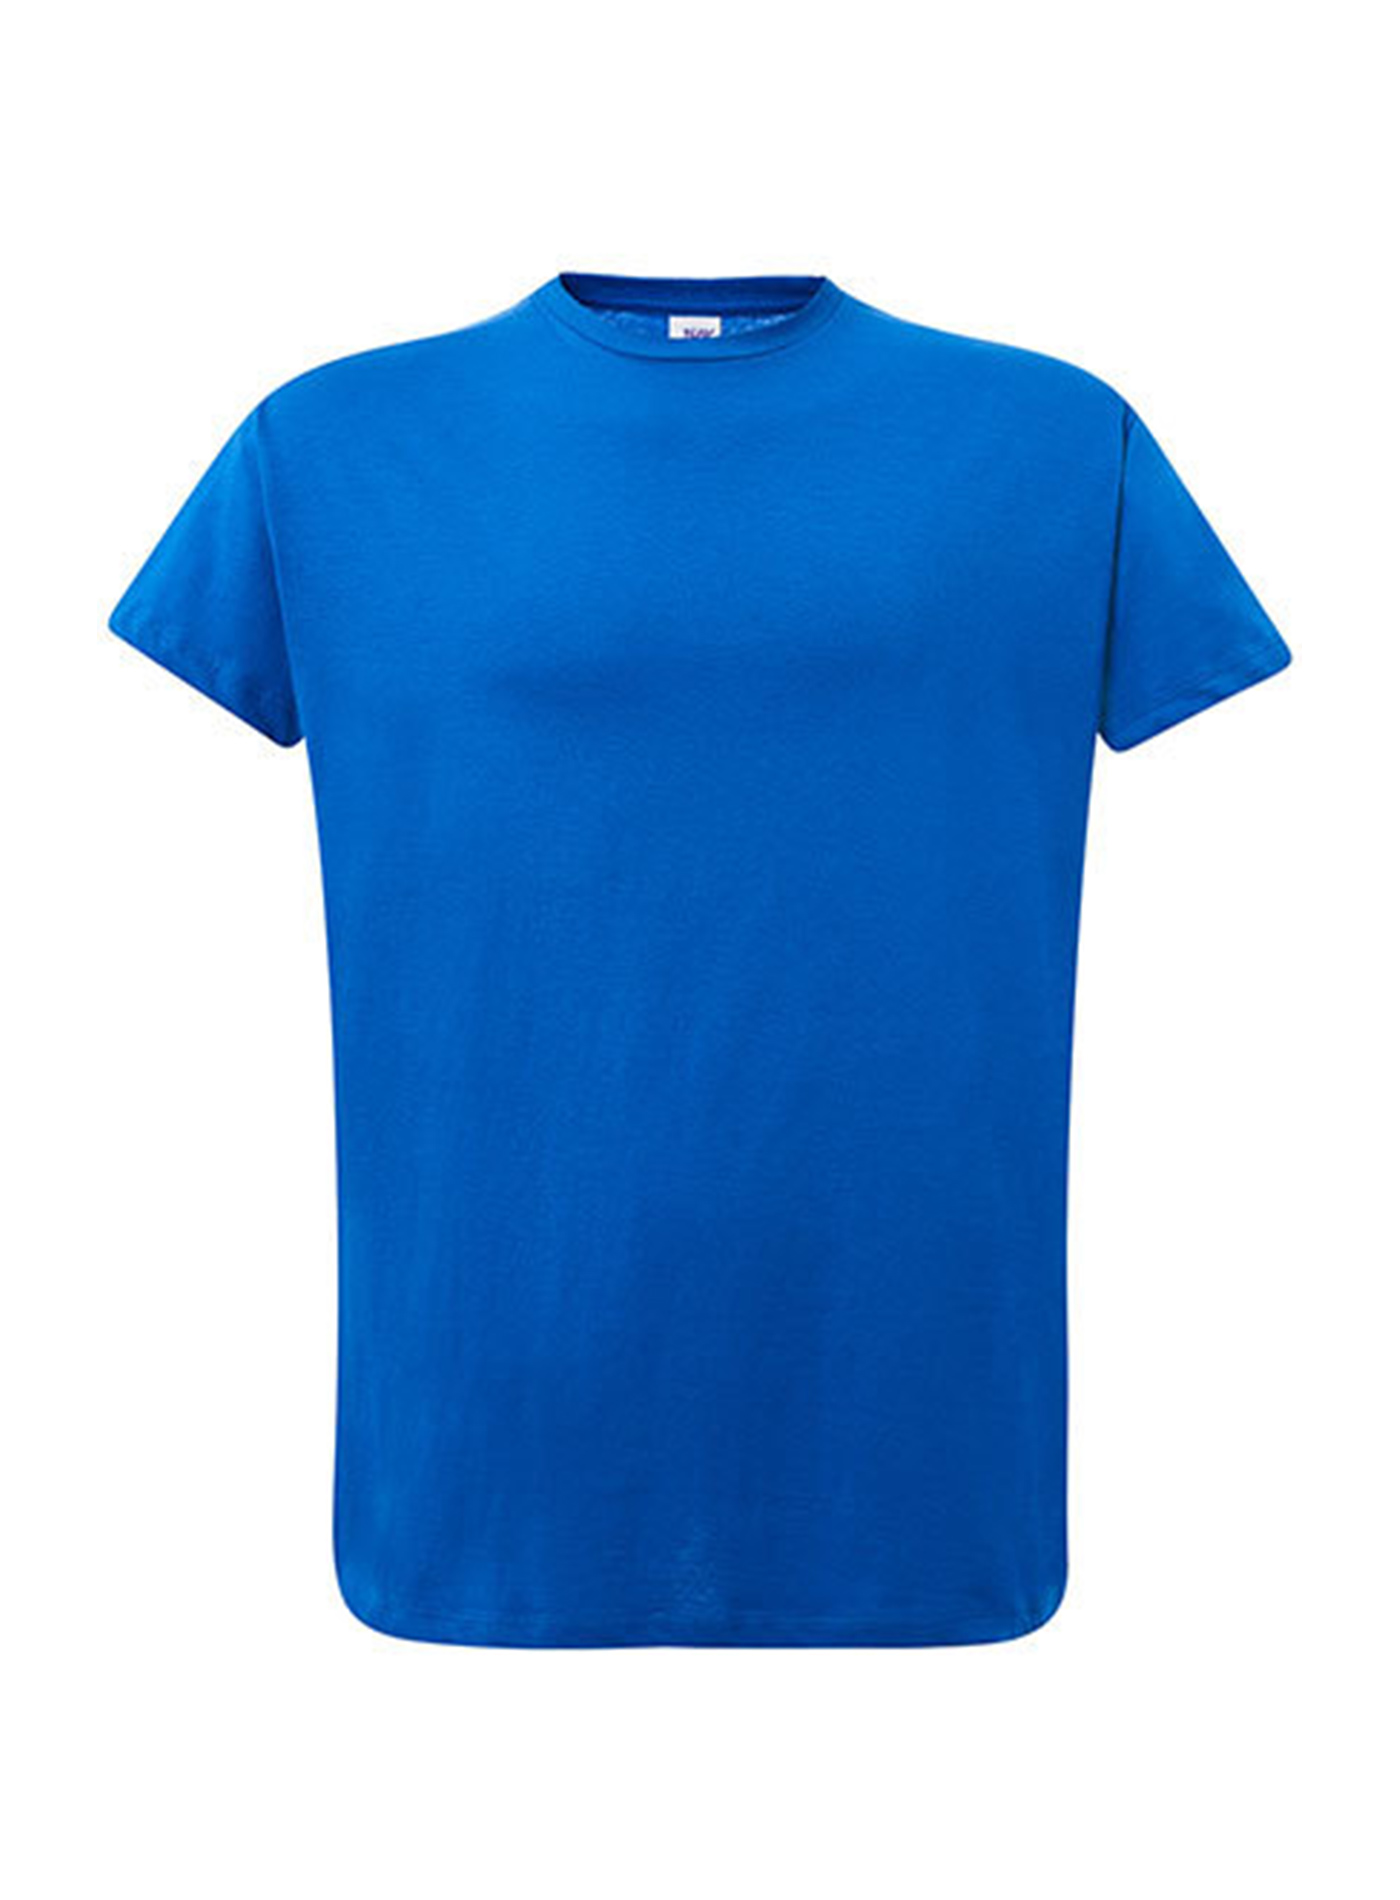 Dámské tričko JHK Curves - královská modrá XL